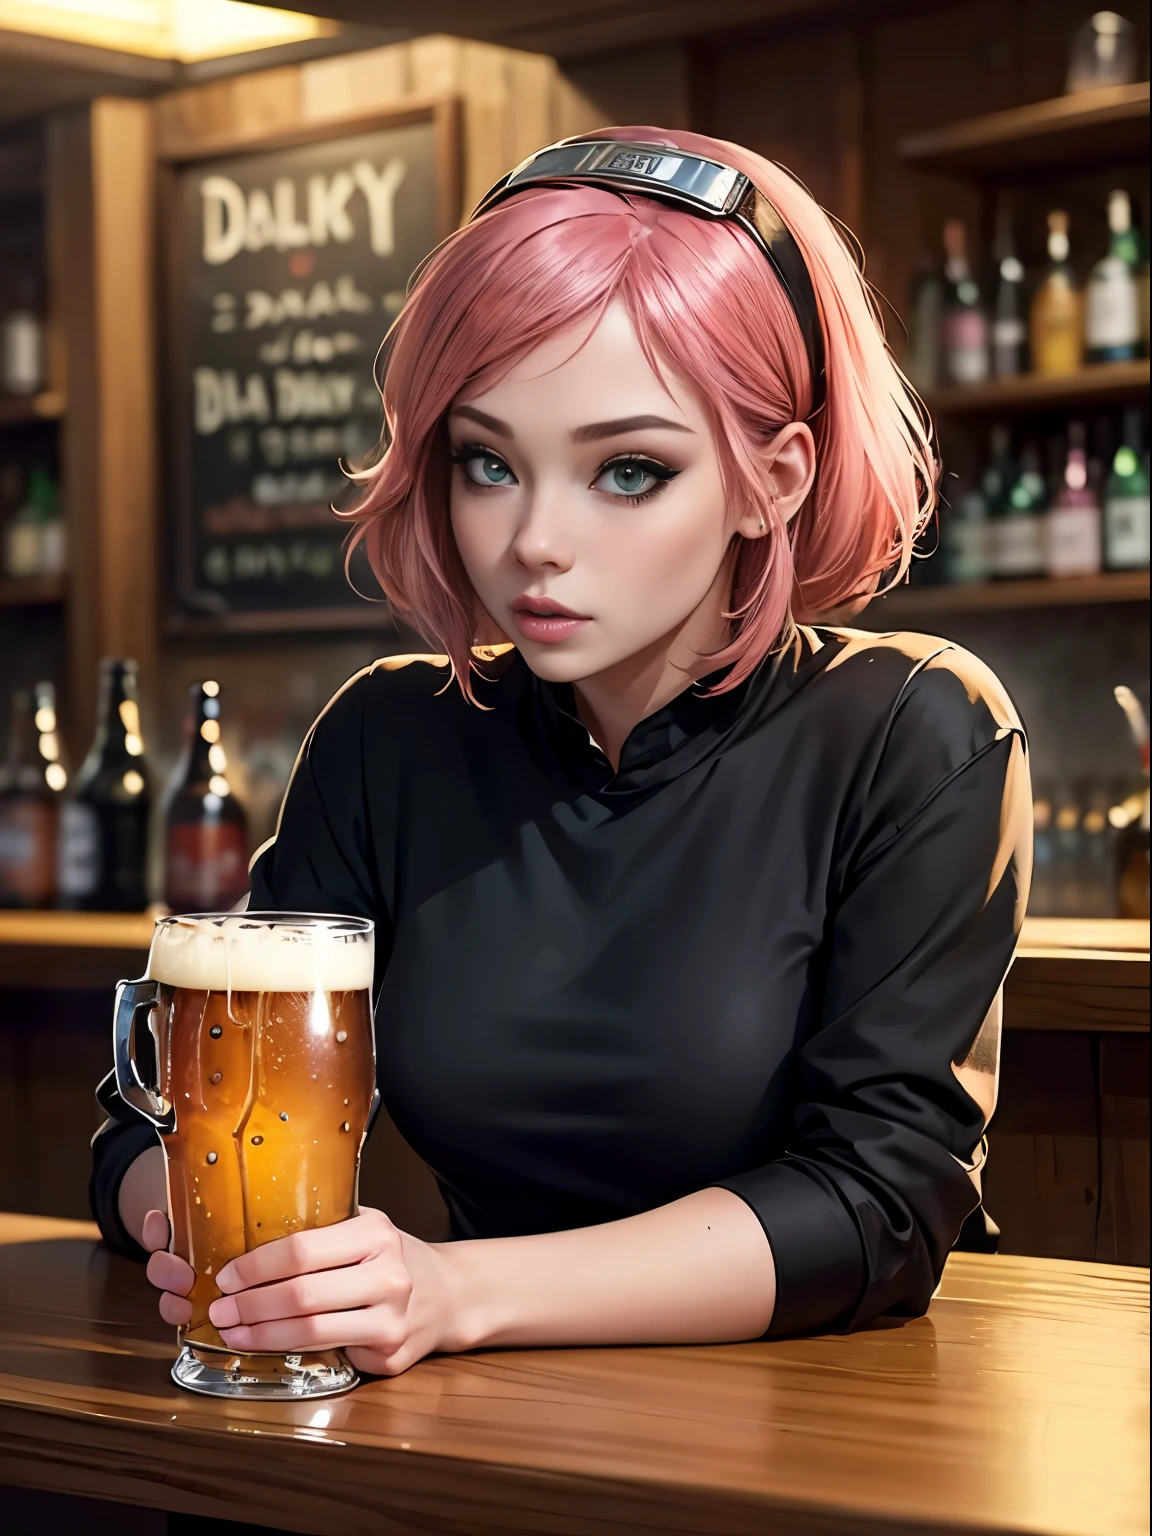 ((性感的, 在酒吧, 1女孩, 日常生活, 粉红色头发, 啤酒, 喝)); ((1个男孩, 喝, 啤酒, 日常生活, 黑发)) ((黑色衬衫))